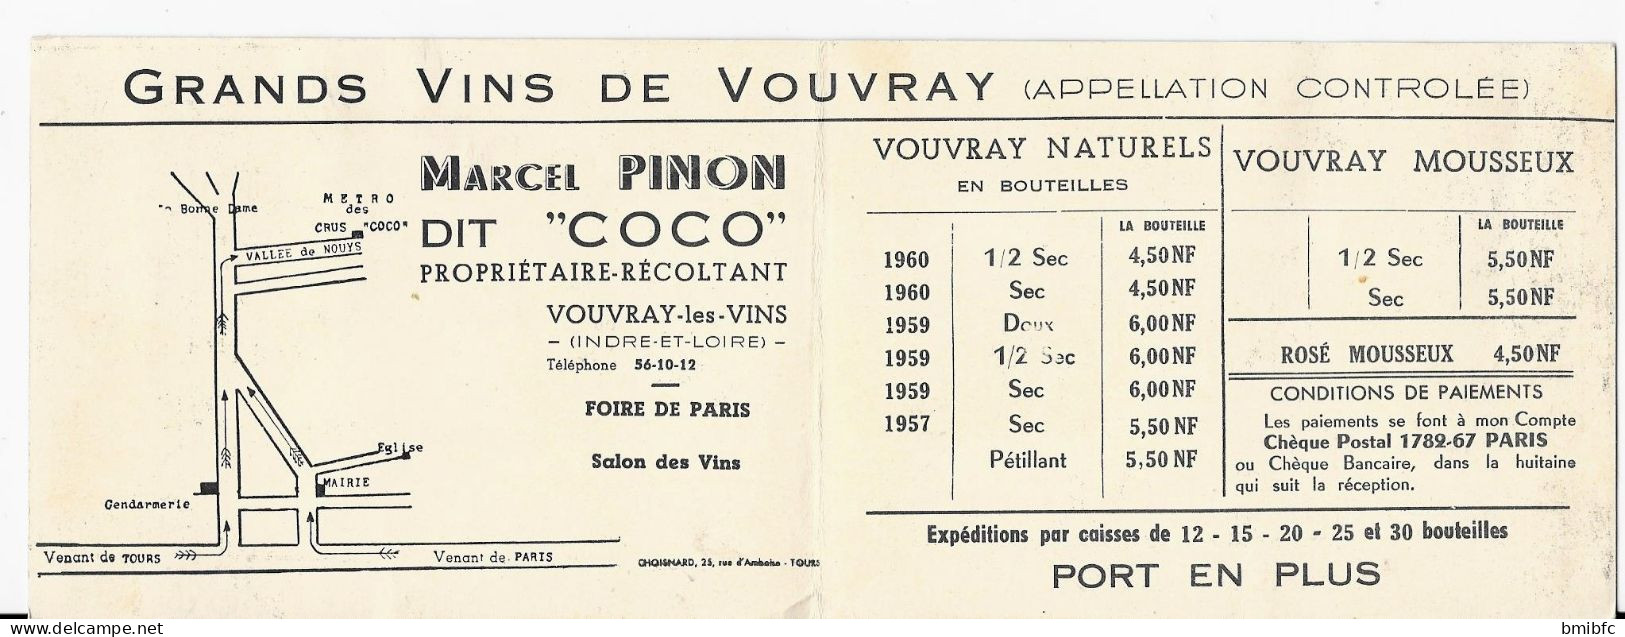 MÉTRO Des CRUS COCO -  Grand Vins De VOUVRAY - Marcel PINON Dit " COCO " Propriétaire-Récoltant à Vouvray Les Vins - Agriculture